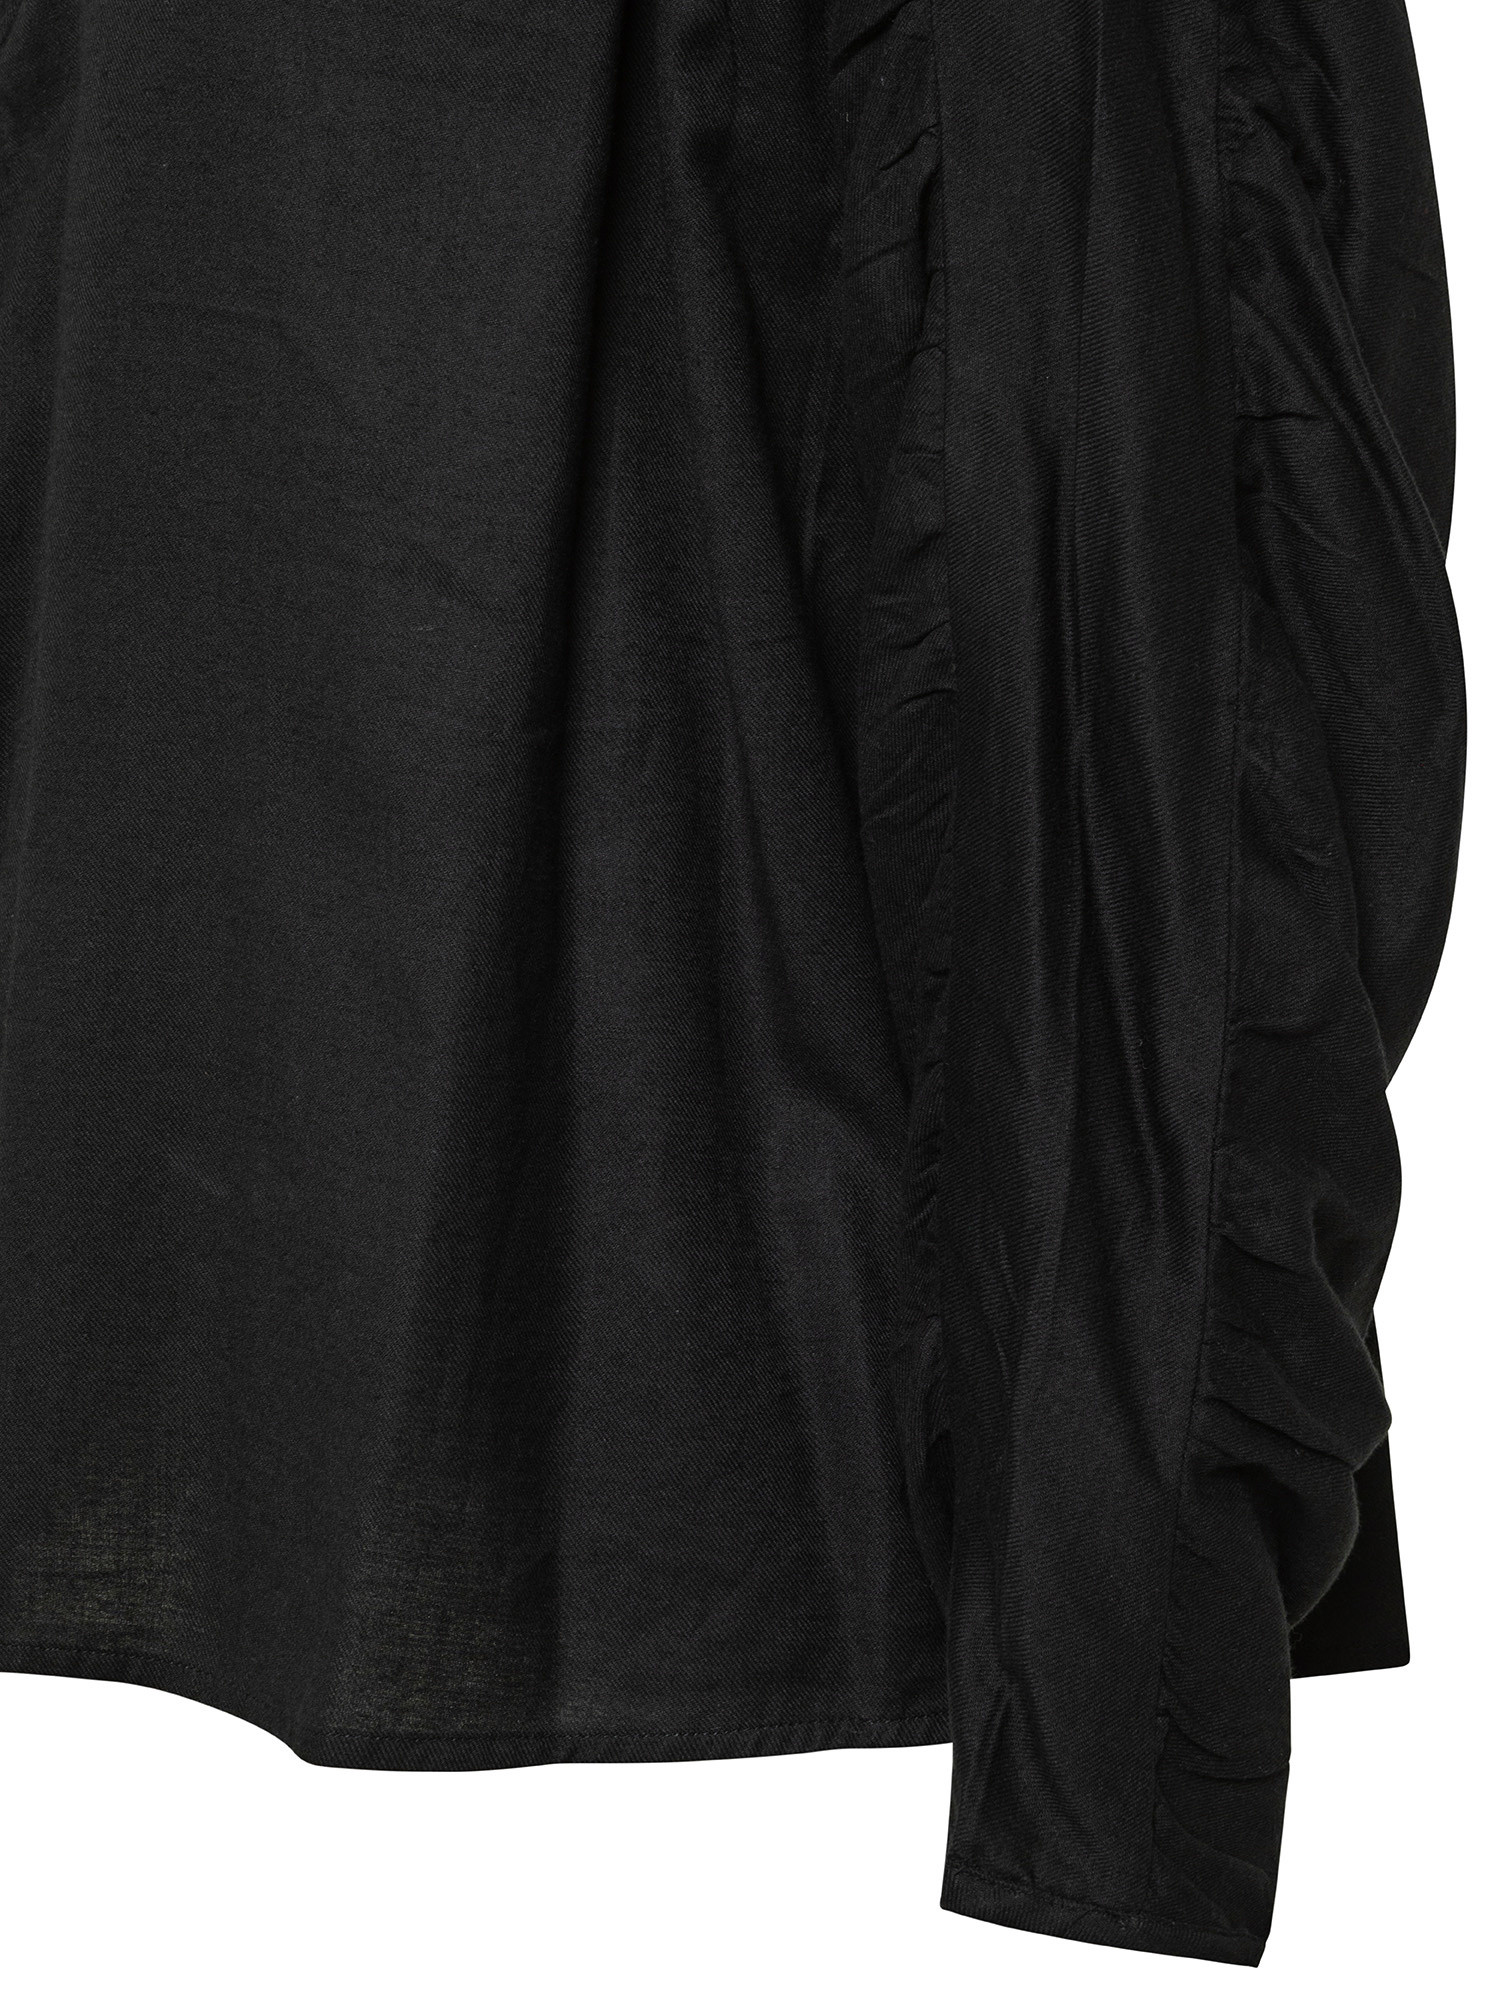 Blusa in cotone con maniche lunghe, Nero, large image number 2